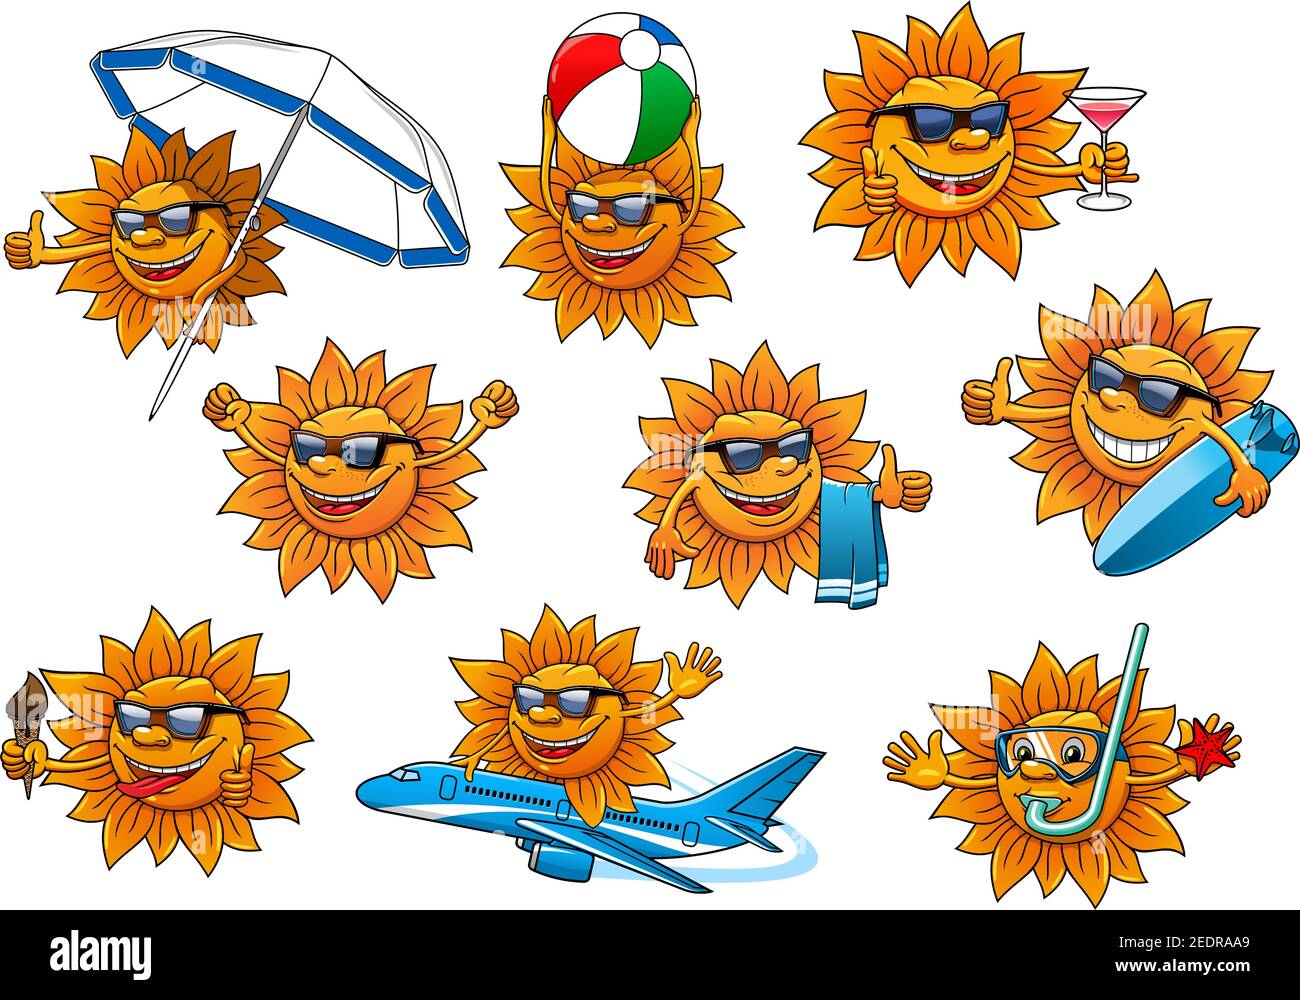 Set di personaggi di cartoni animati Sun. Sole giallo in occhiali da sole e maschera subacquea con cono gelato, cocktail drink, asciugamano, ombrellone, palla, tavola da surf. Summe Illustrazione Vettoriale